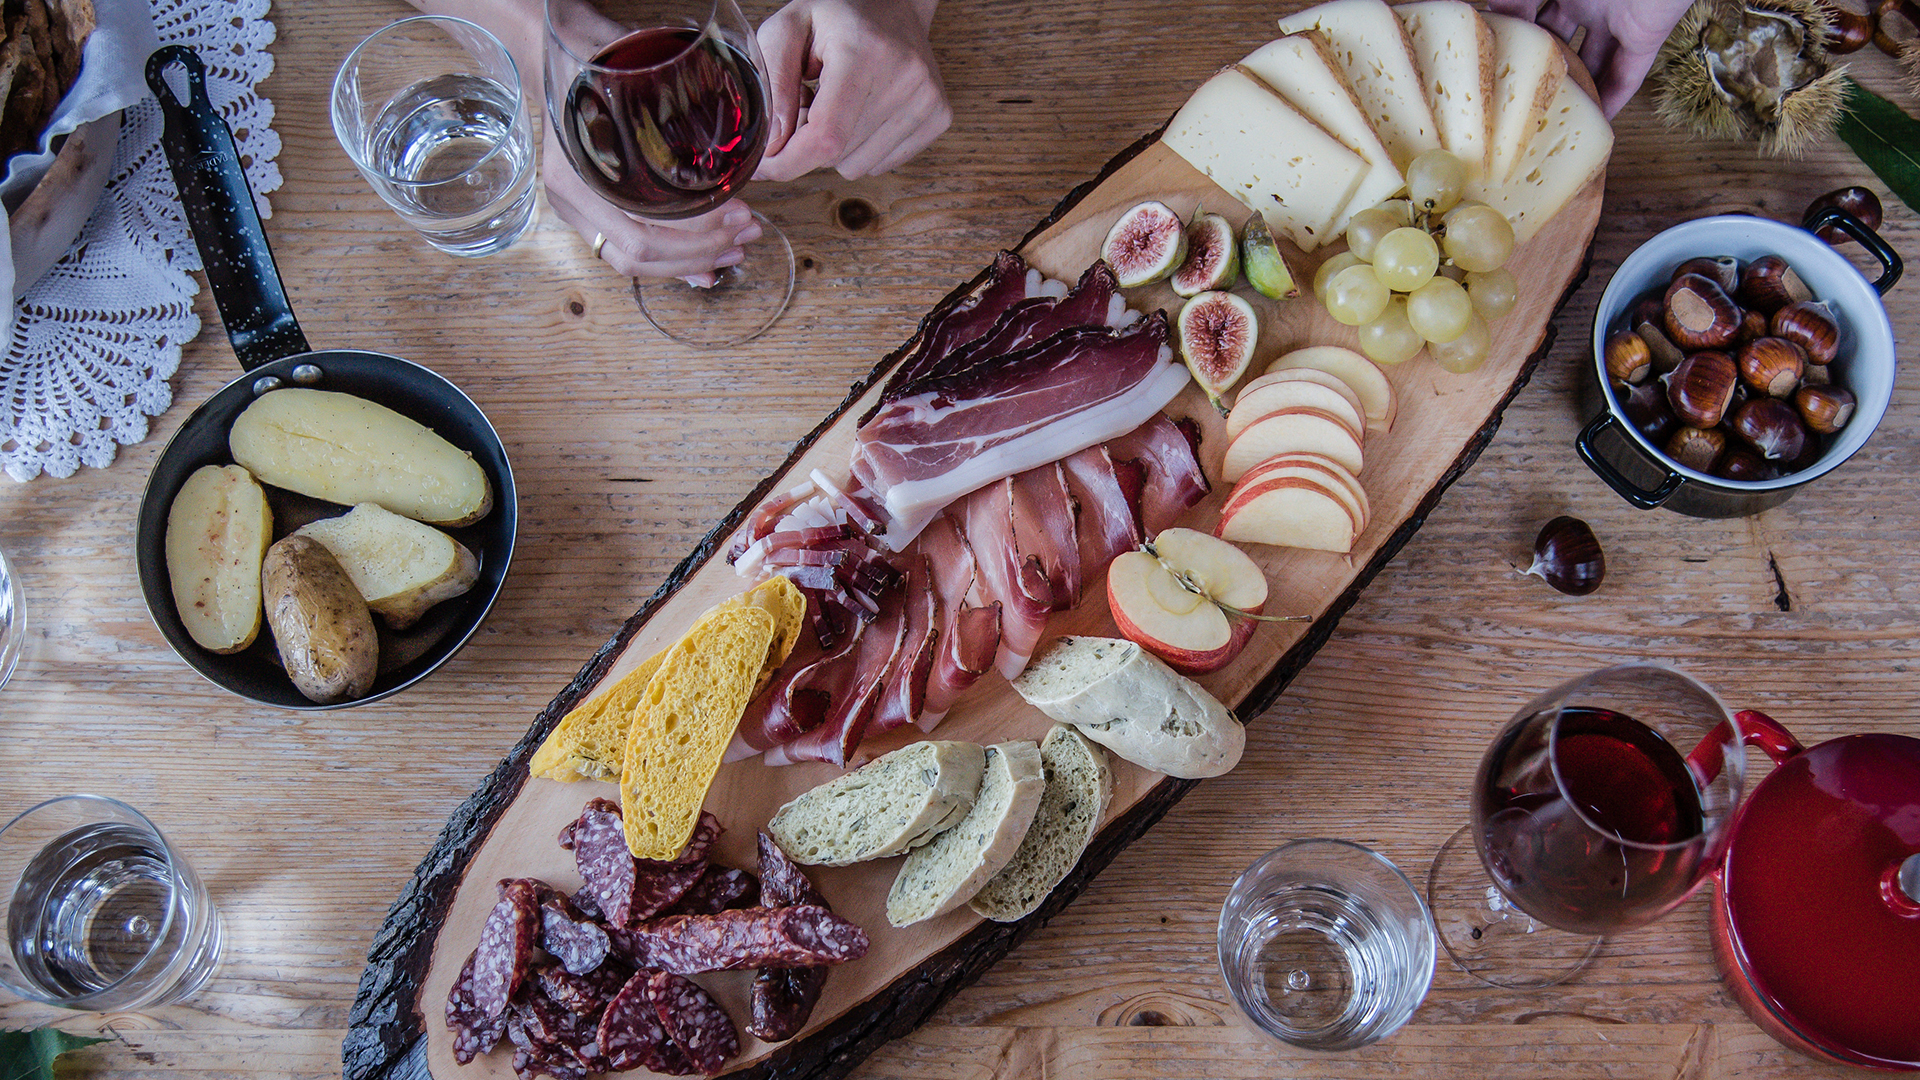 Piatto tradizionale dell'enogastronomia di Bolzano, con dei piatti di carne e salumi accompagnati da un bicchiere di vino rosso.